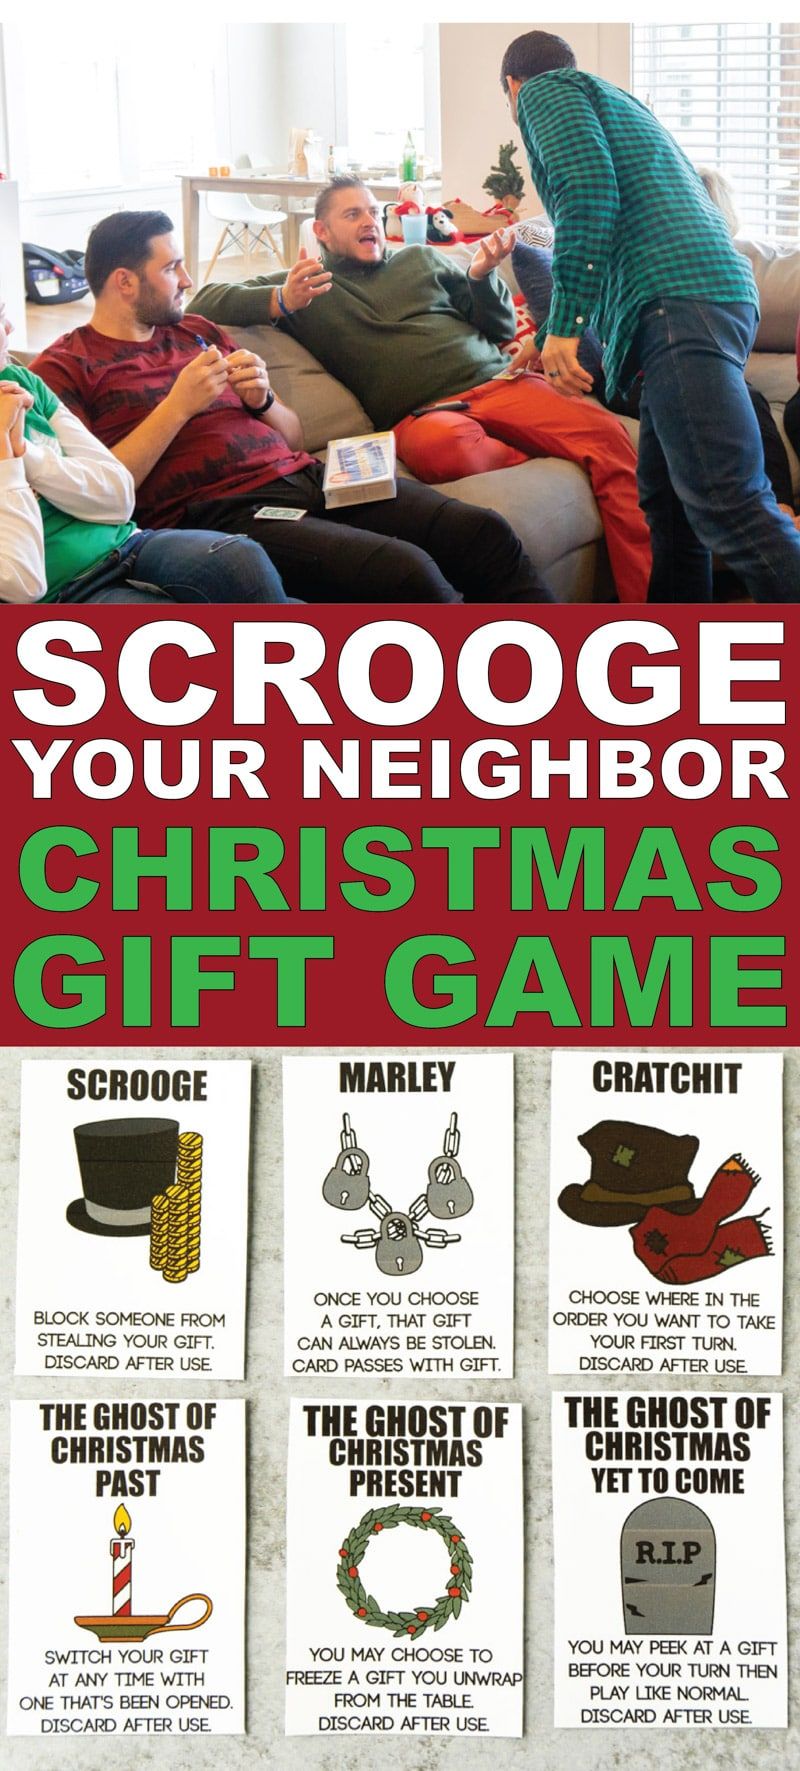 ¡Este intercambio de regalos Scrooge Your Neighbor es uno de los juegos navideños más divertidos de todos los tiempos! Obtenga las tarjetas imprimibles gratuitas y juegue con su oficina, un grupo de adultos o incluso para una noche familiar. ¡Es divertidísimo y muy divertido!